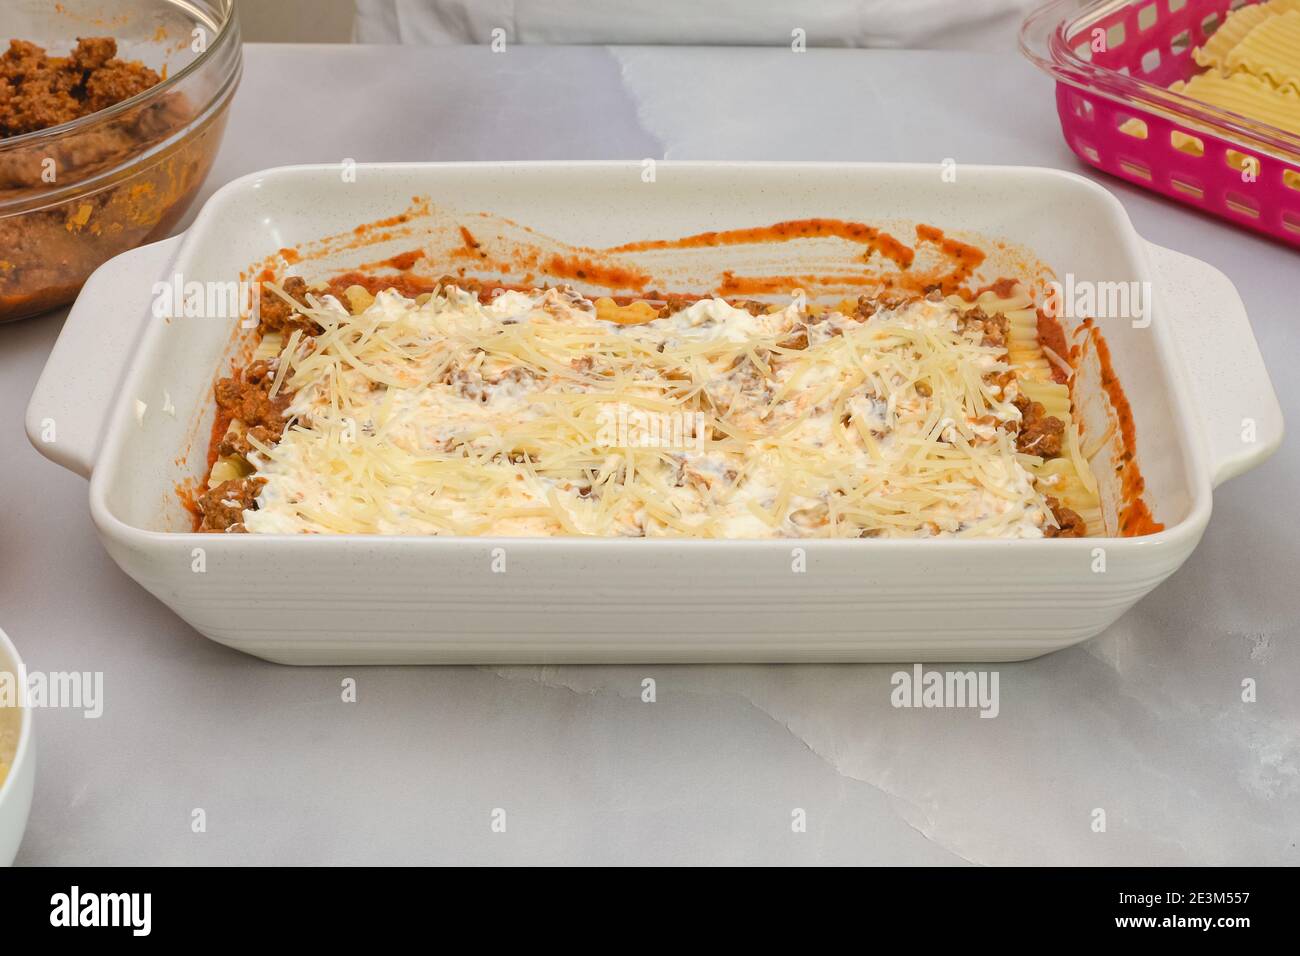 Rindfleisch Lasagne Schritt für Schritt Rezept. Montieren Sie die Lasagne,  Vorderansicht, Marmor Küchentisch Hintergrund Stockfotografie - Alamy